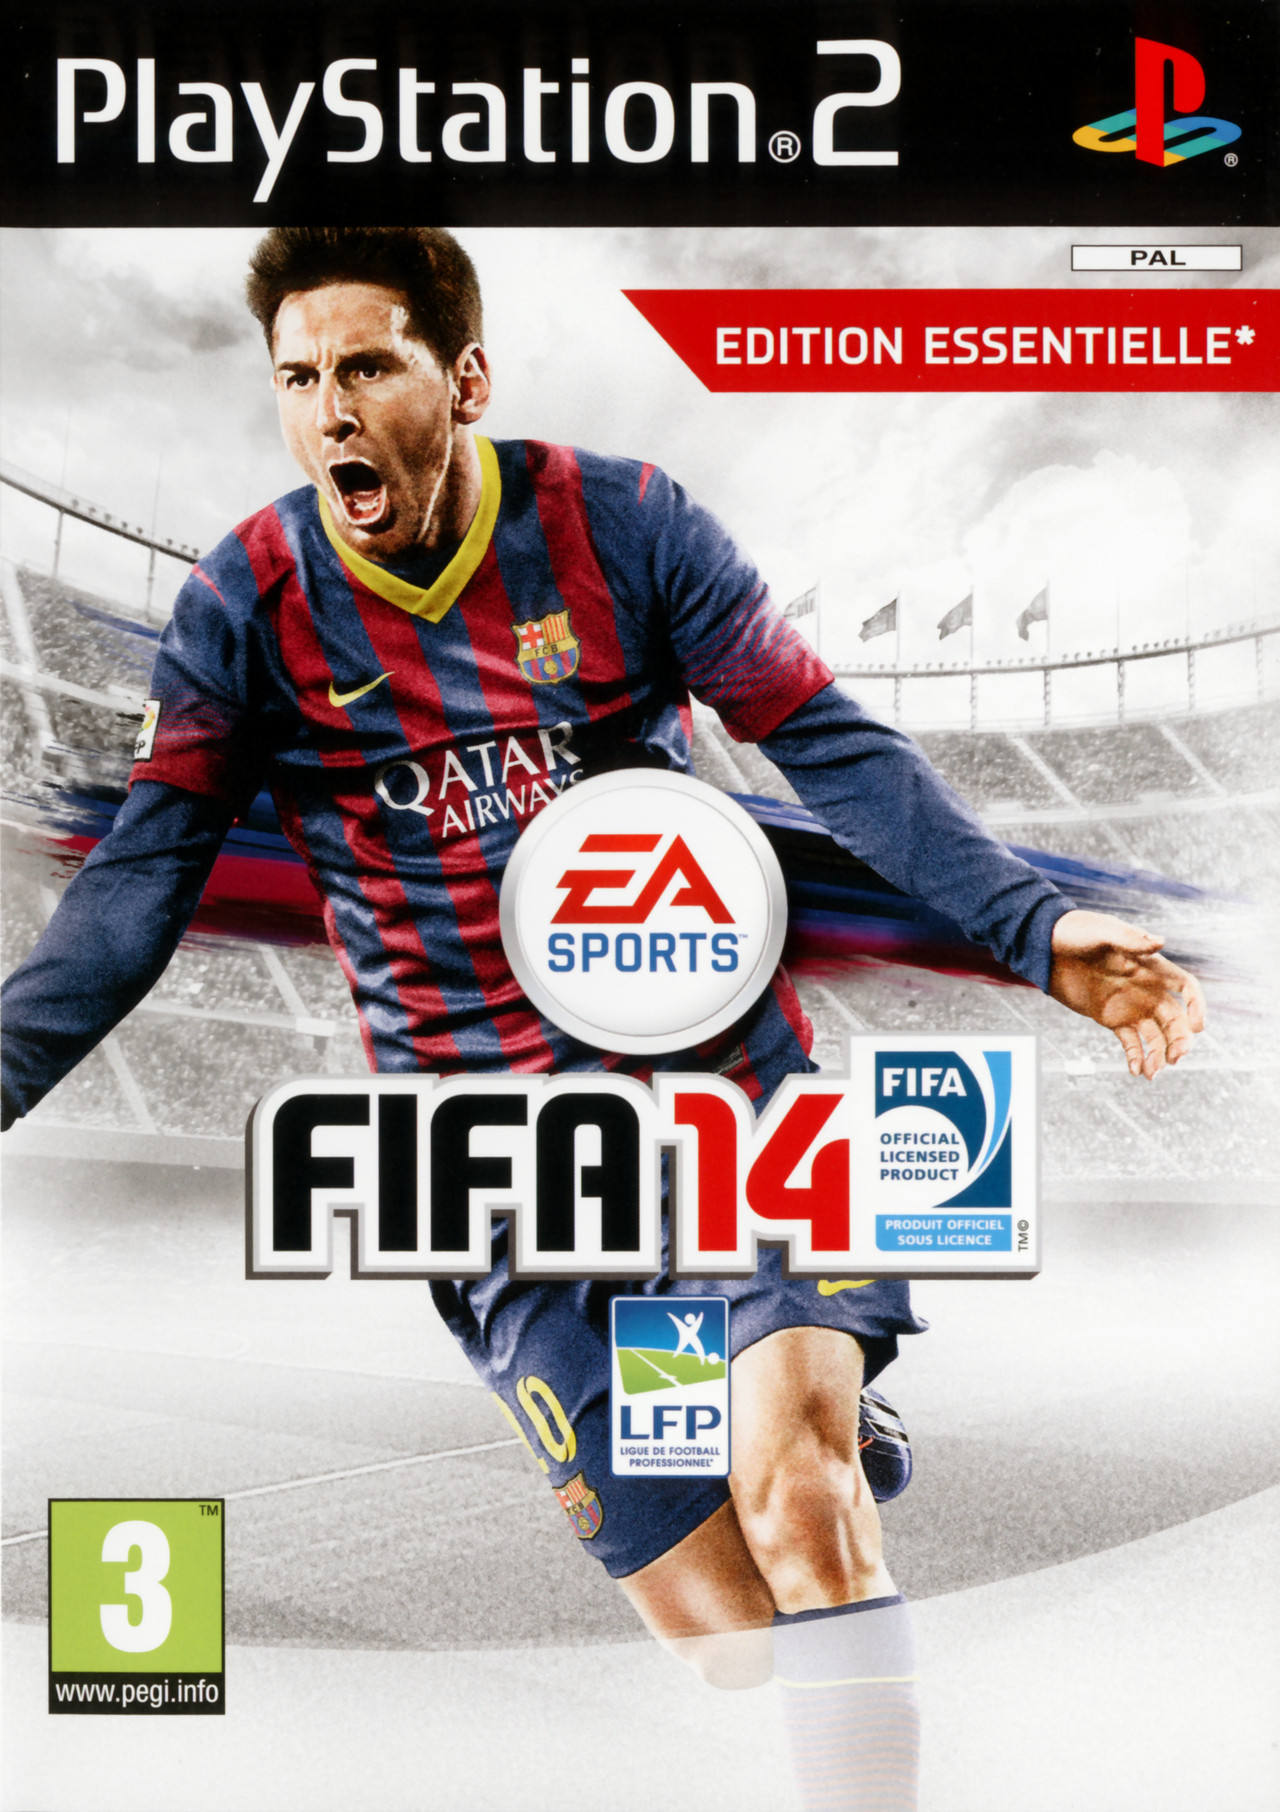 FIFA 14 sur PlayStation 2 - jeuxvideo.com